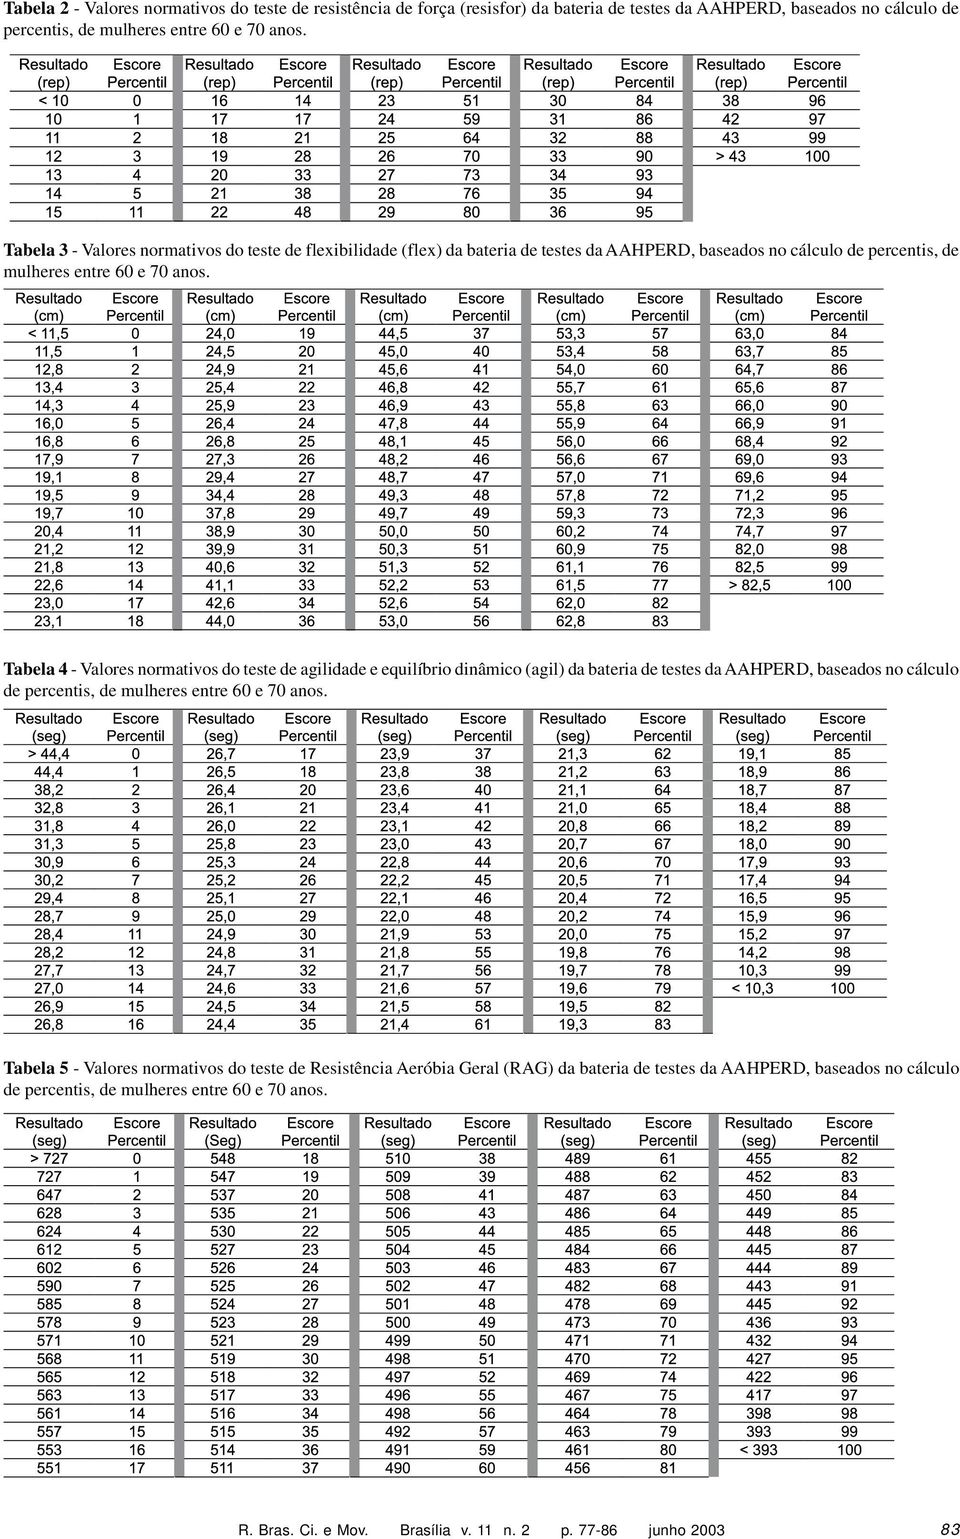 Tabela 4 - Valores normativos do teste de agilidade e equilíbrio dinâmico (agil) da bateria de testes da AAHPERD, baseados no cálculo de percentis, de mulheres entre 60 e 70 anos.